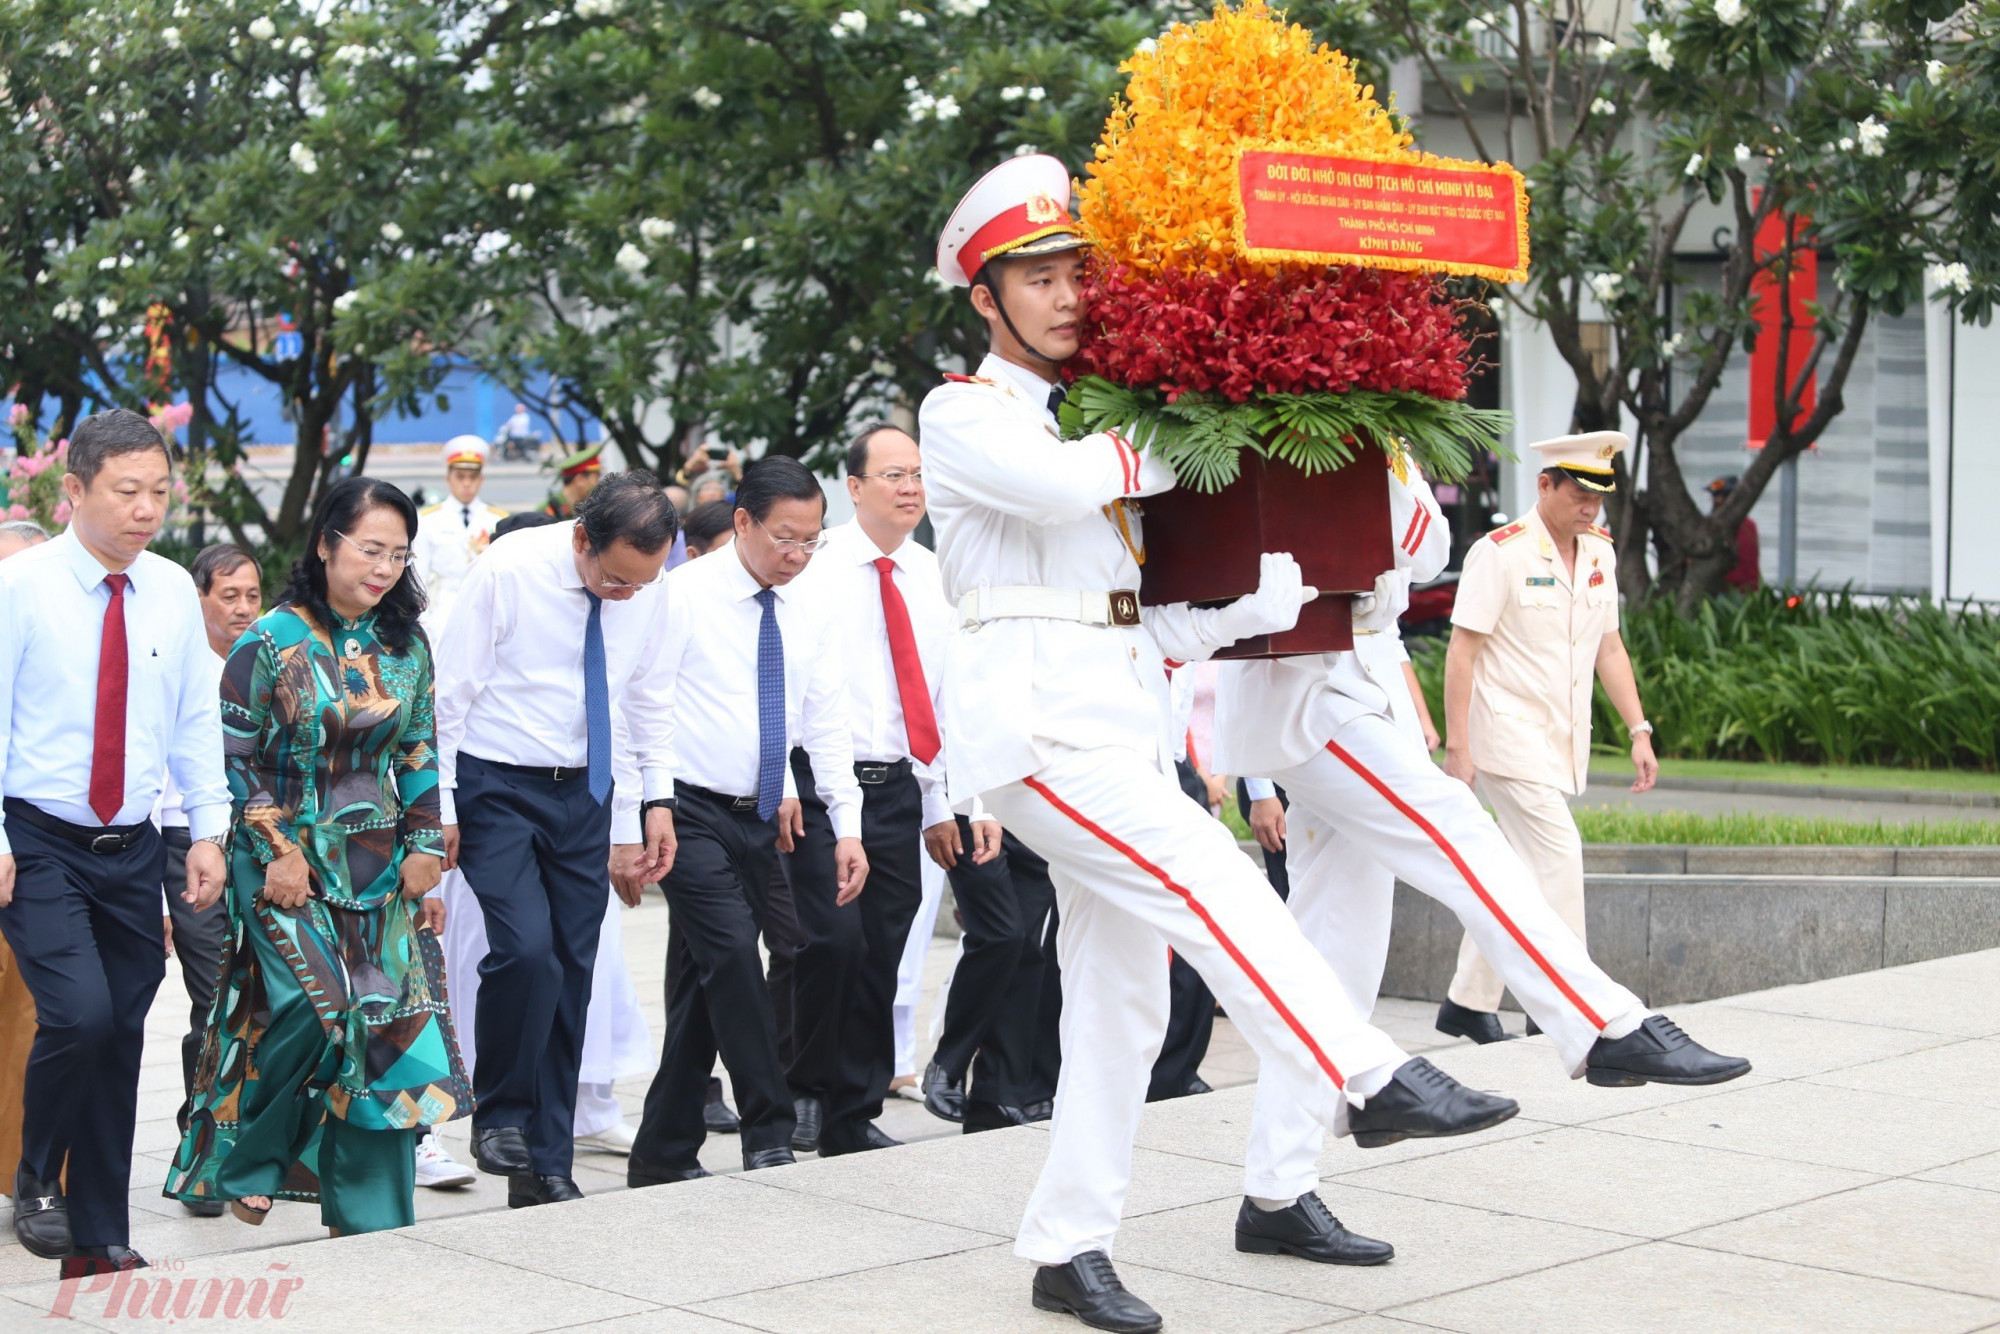 Lãnh đạo thành phố dâng hoa tưởng nhớ công ơn Chủ tịch Hồ Chí Minh